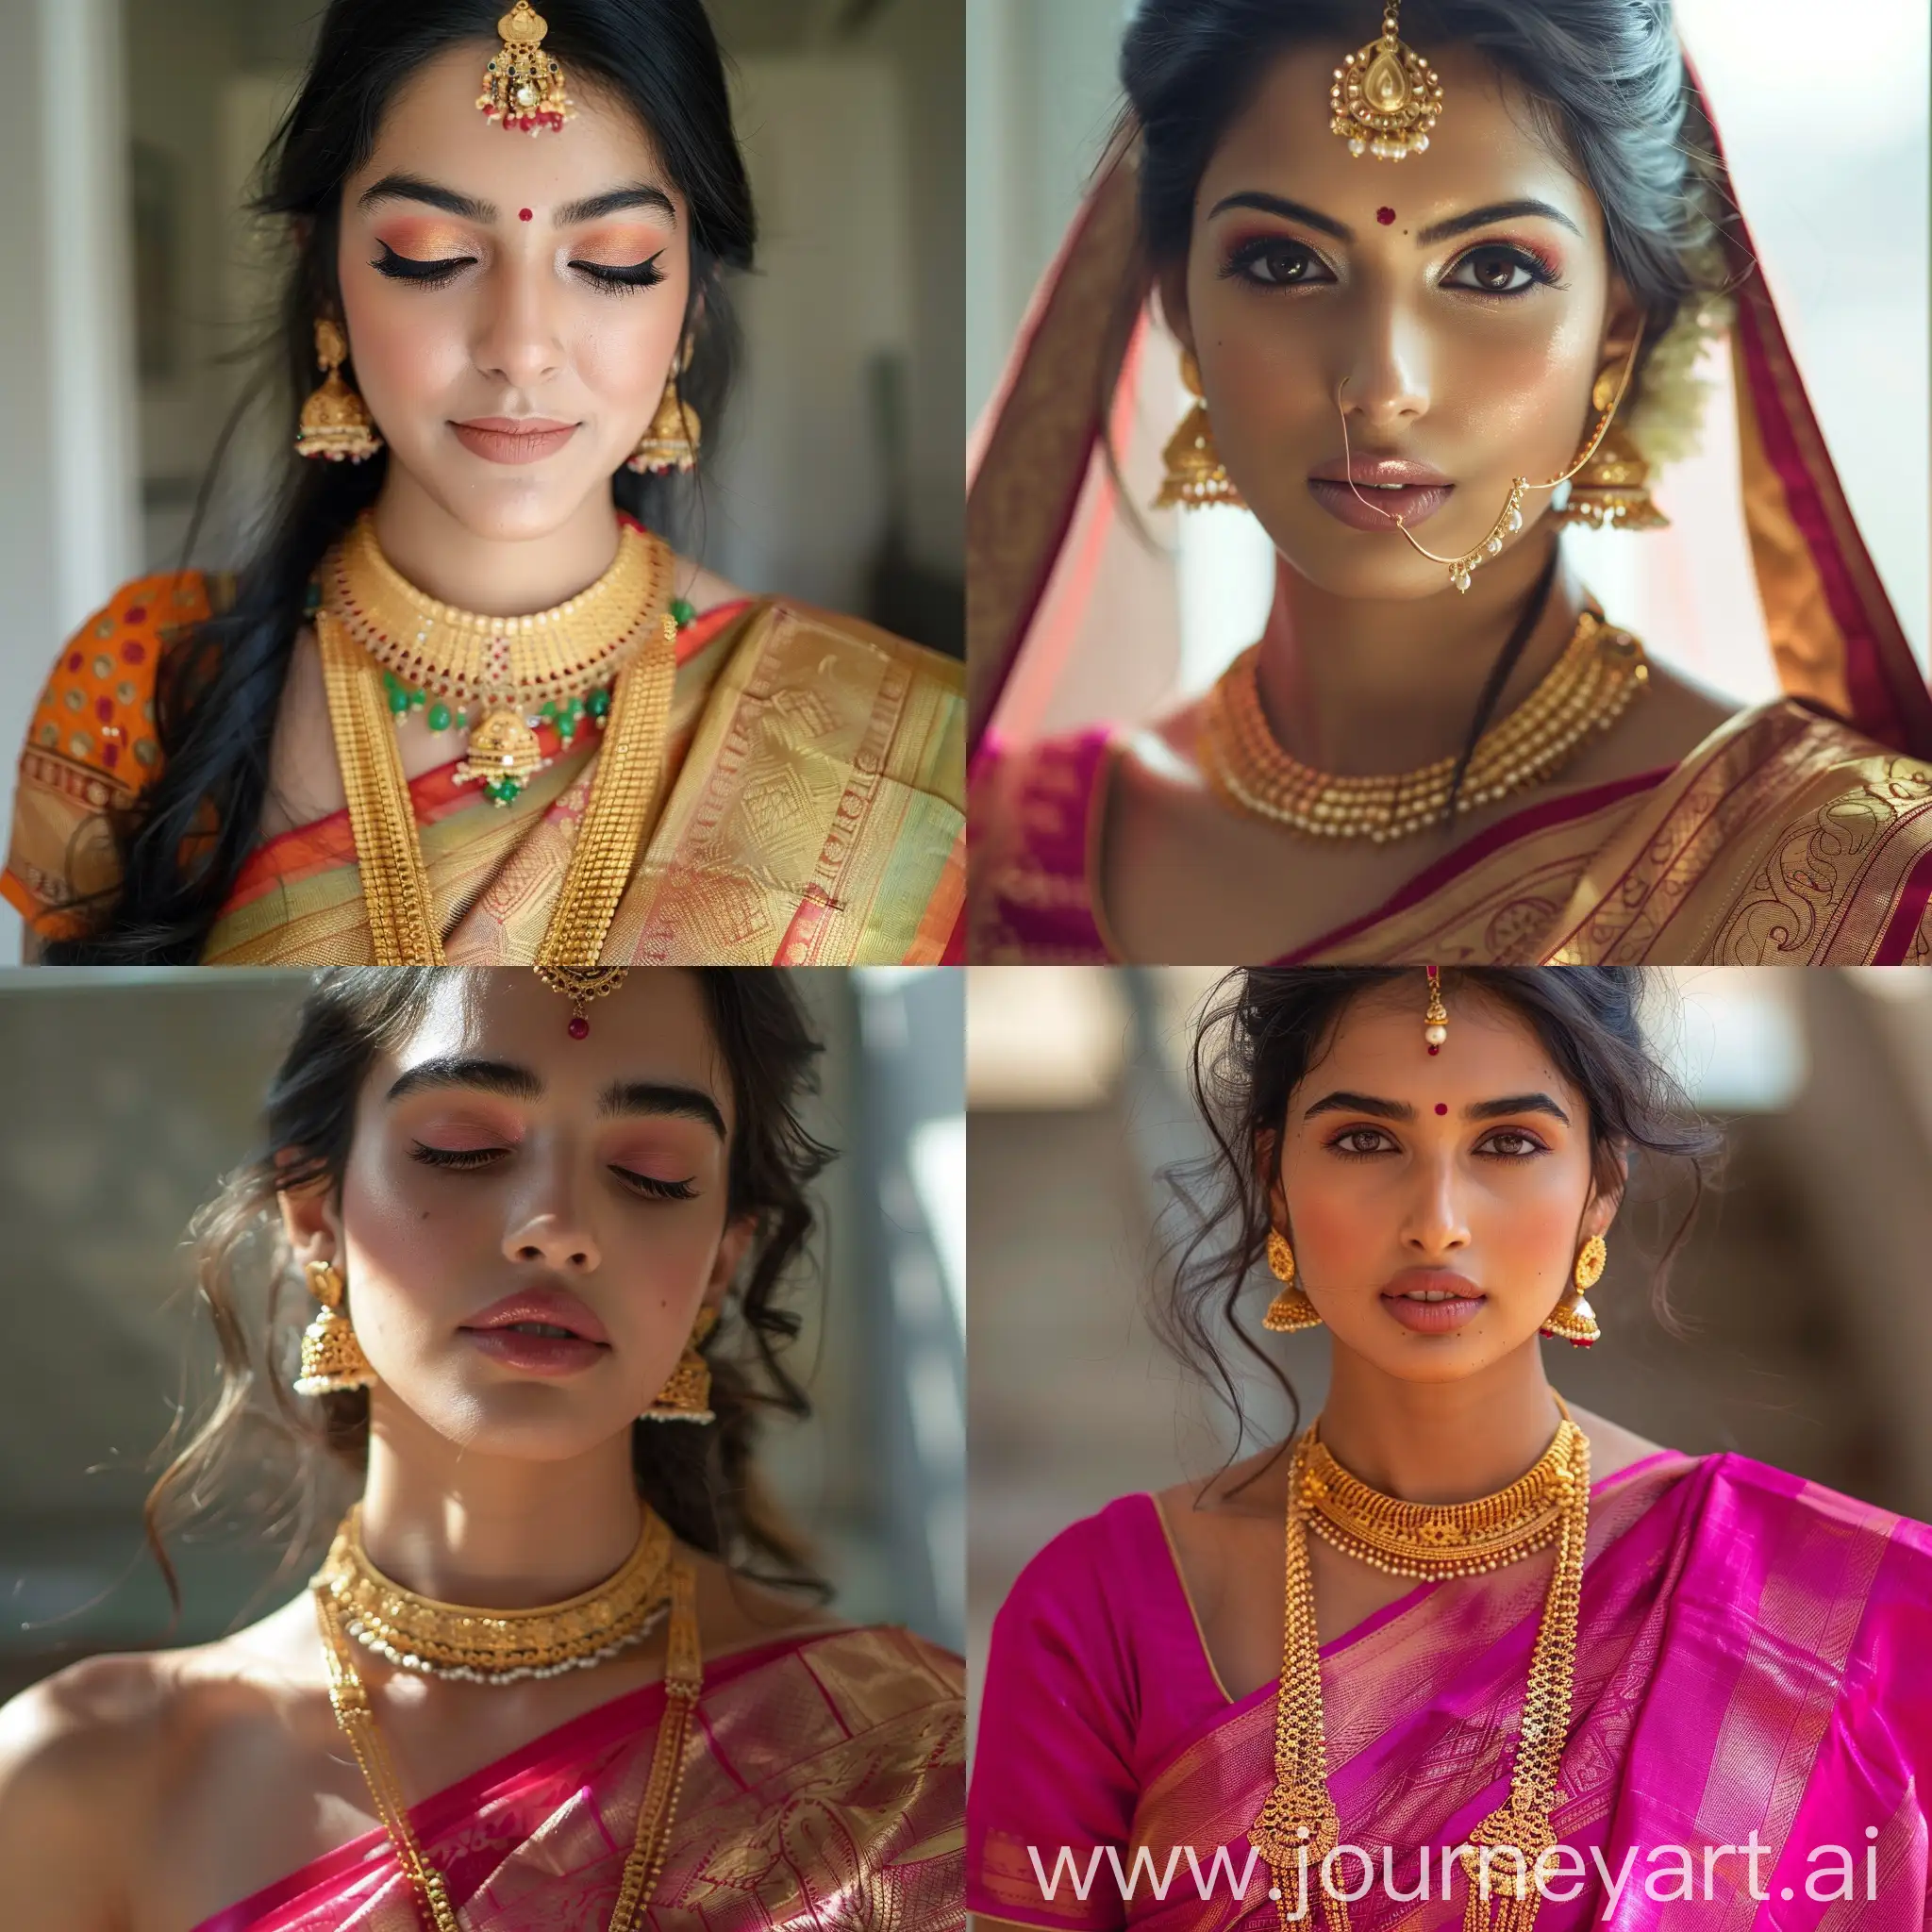 indian women in traditional saree, makeup , closeup look 